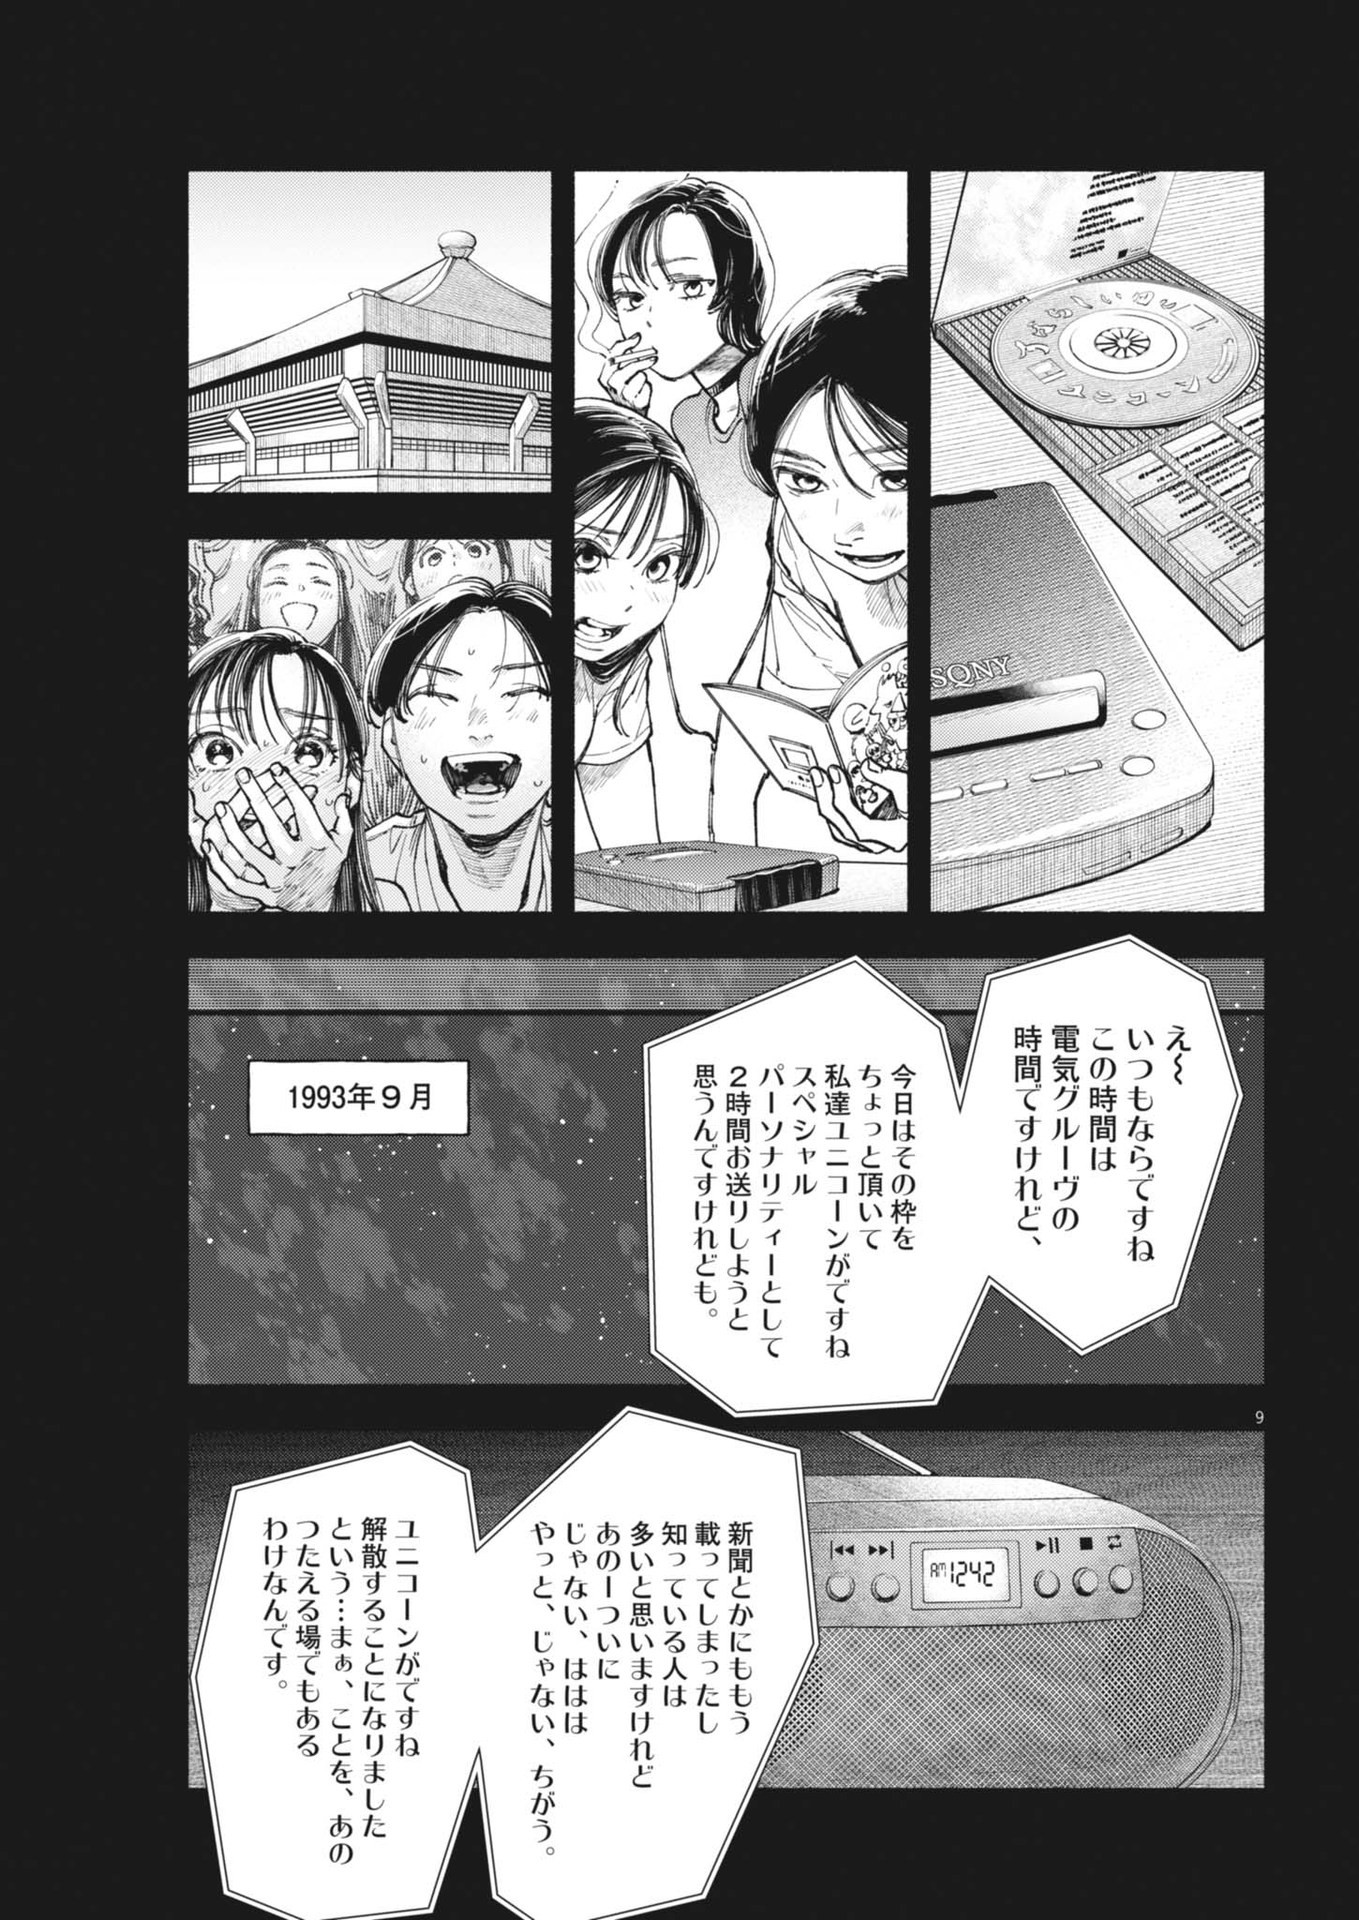 Konoyo wa Tatakau Kachi ga Aru  - Chapter 26 - Page 9